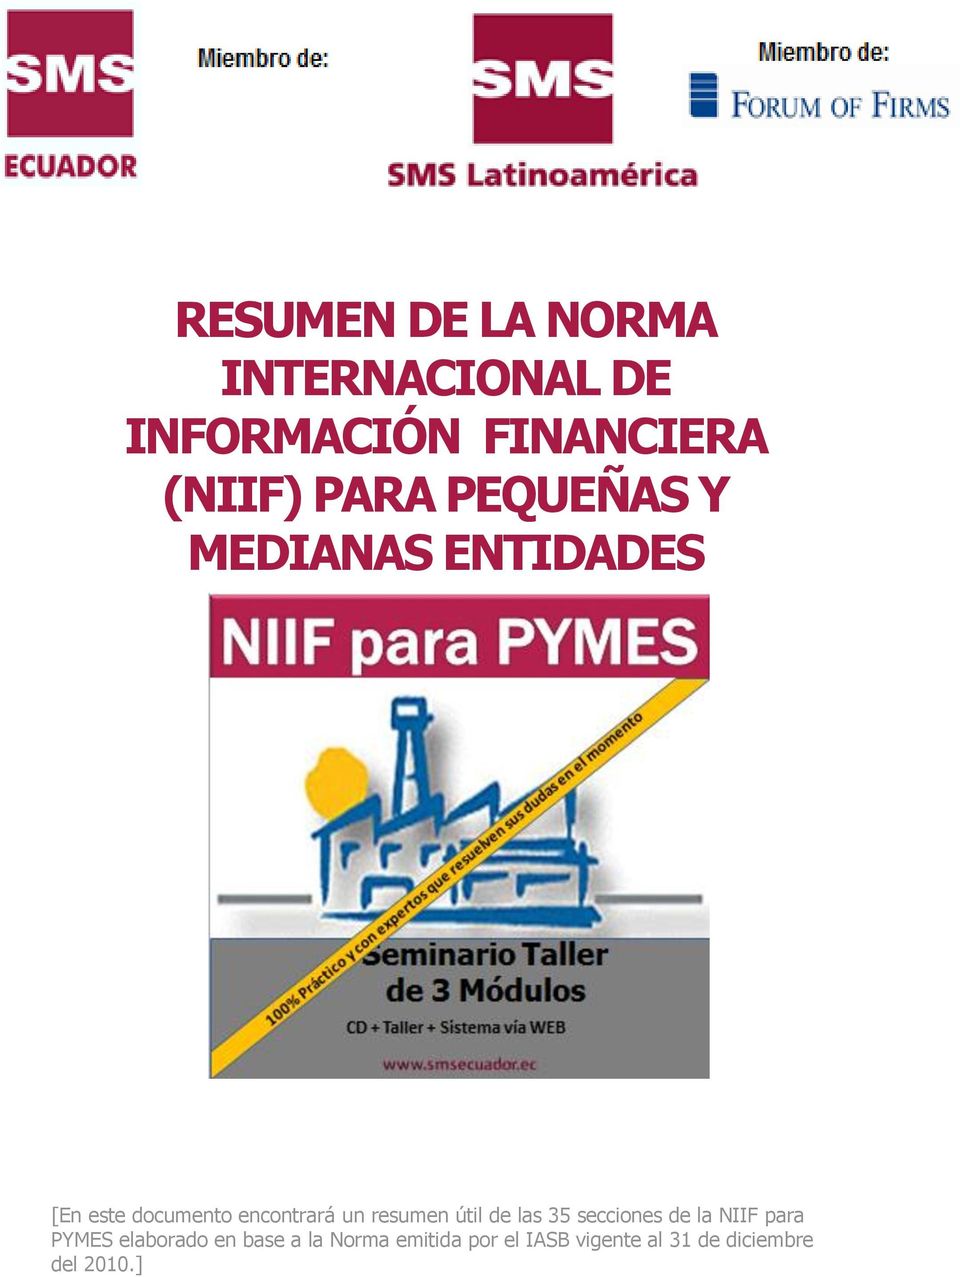 resumen útil de las 35 secciones de la NIIF para PYMES elaborado en